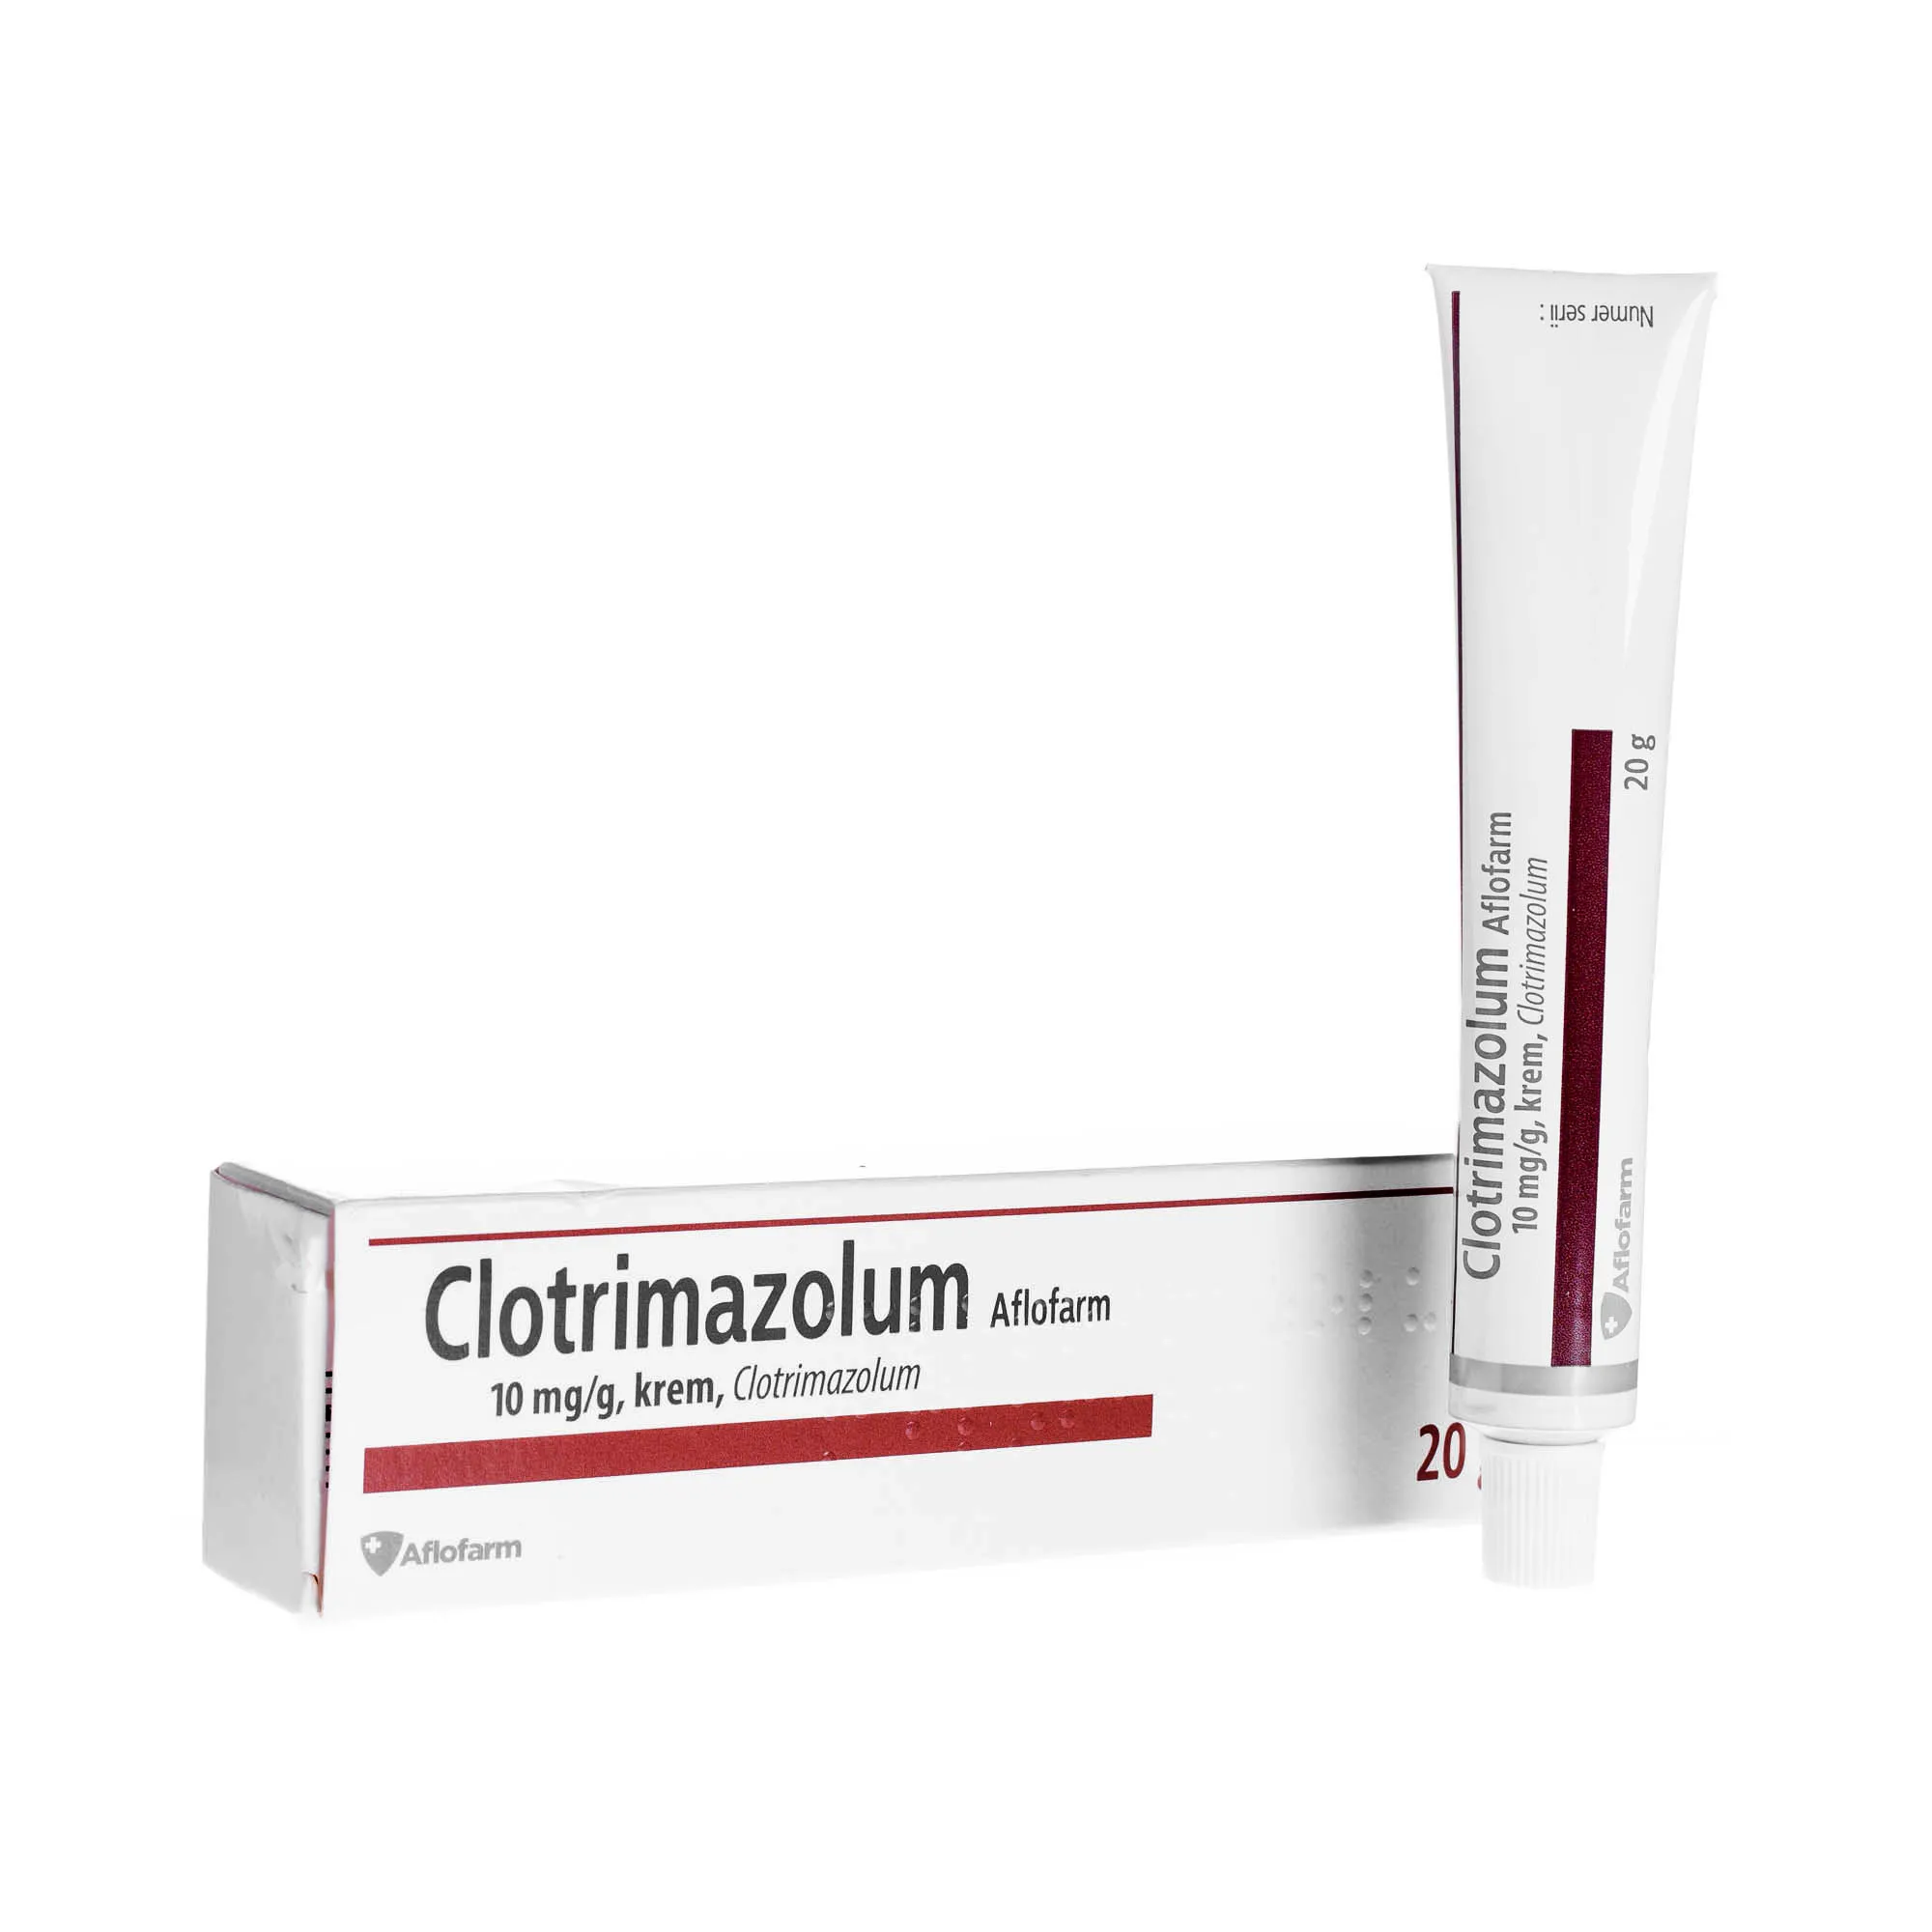 Clotrimazolum Aflofarm, krem przeciwgrzybiczy, 20 g